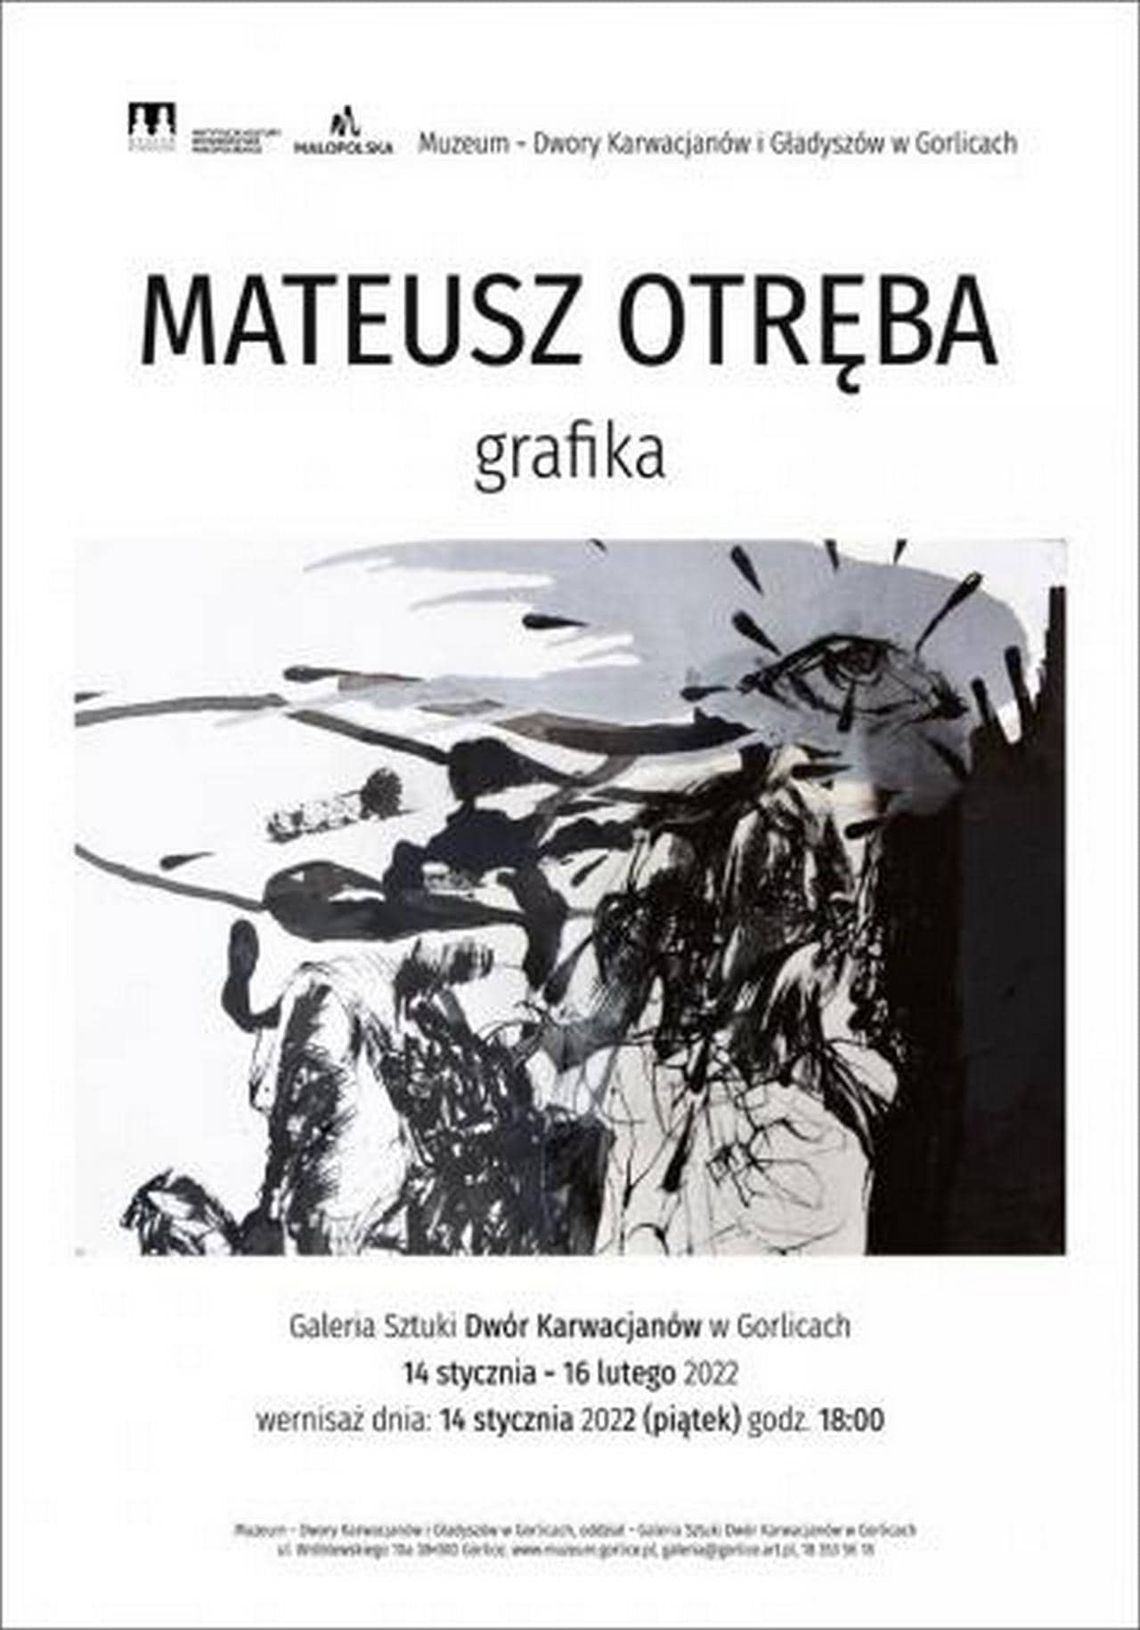 Wernisaż wystawy rysunku Mateusza Otręby | halogorlice.info